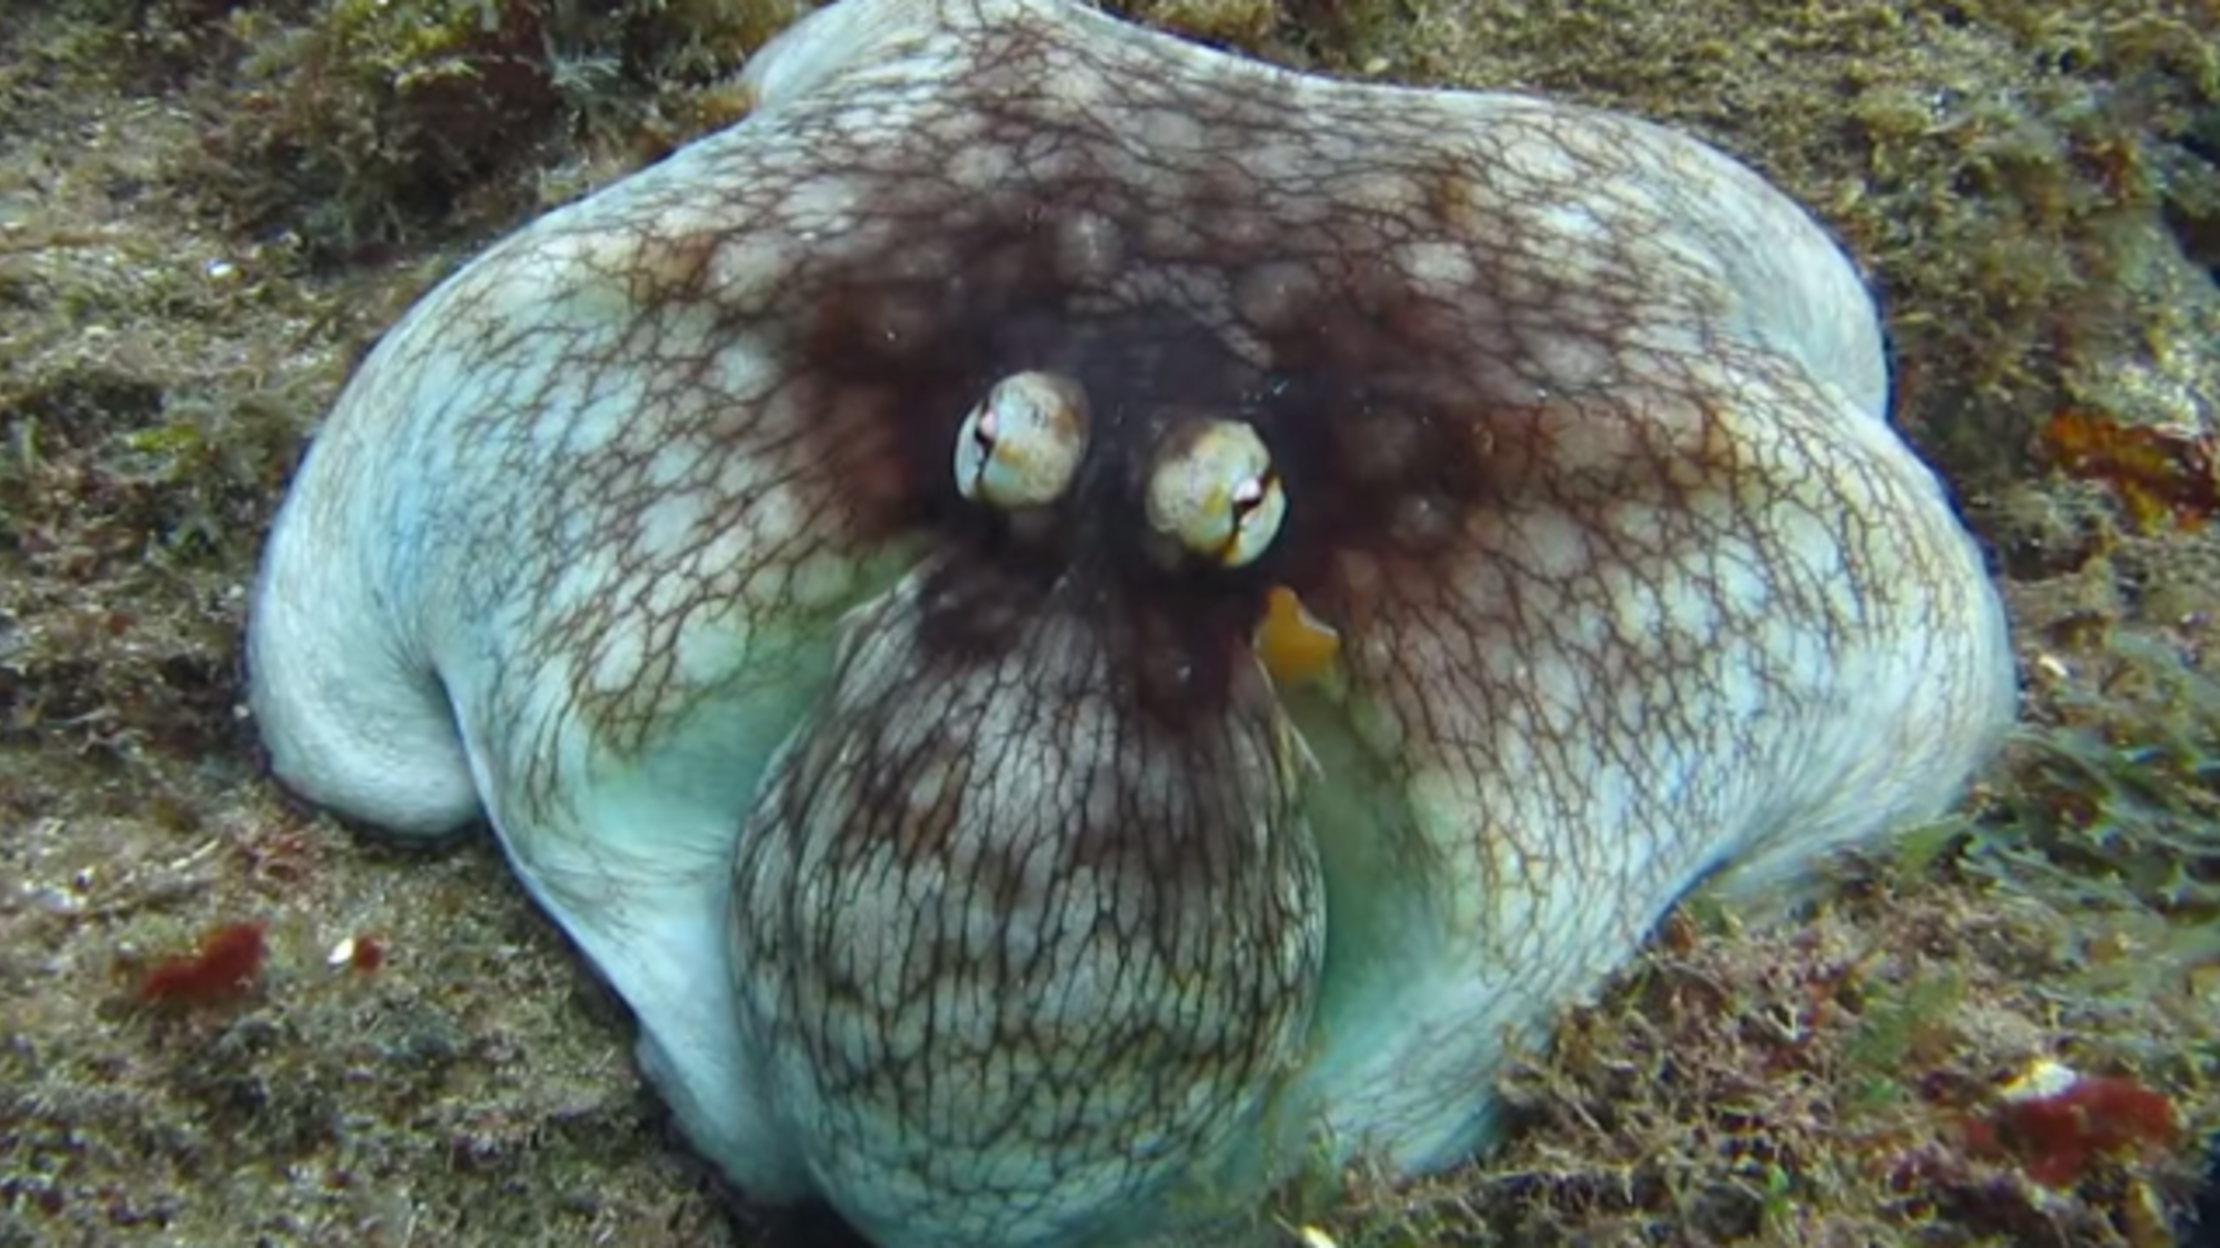 Explaining This Octopus' Amazing Camouflage Skills ...